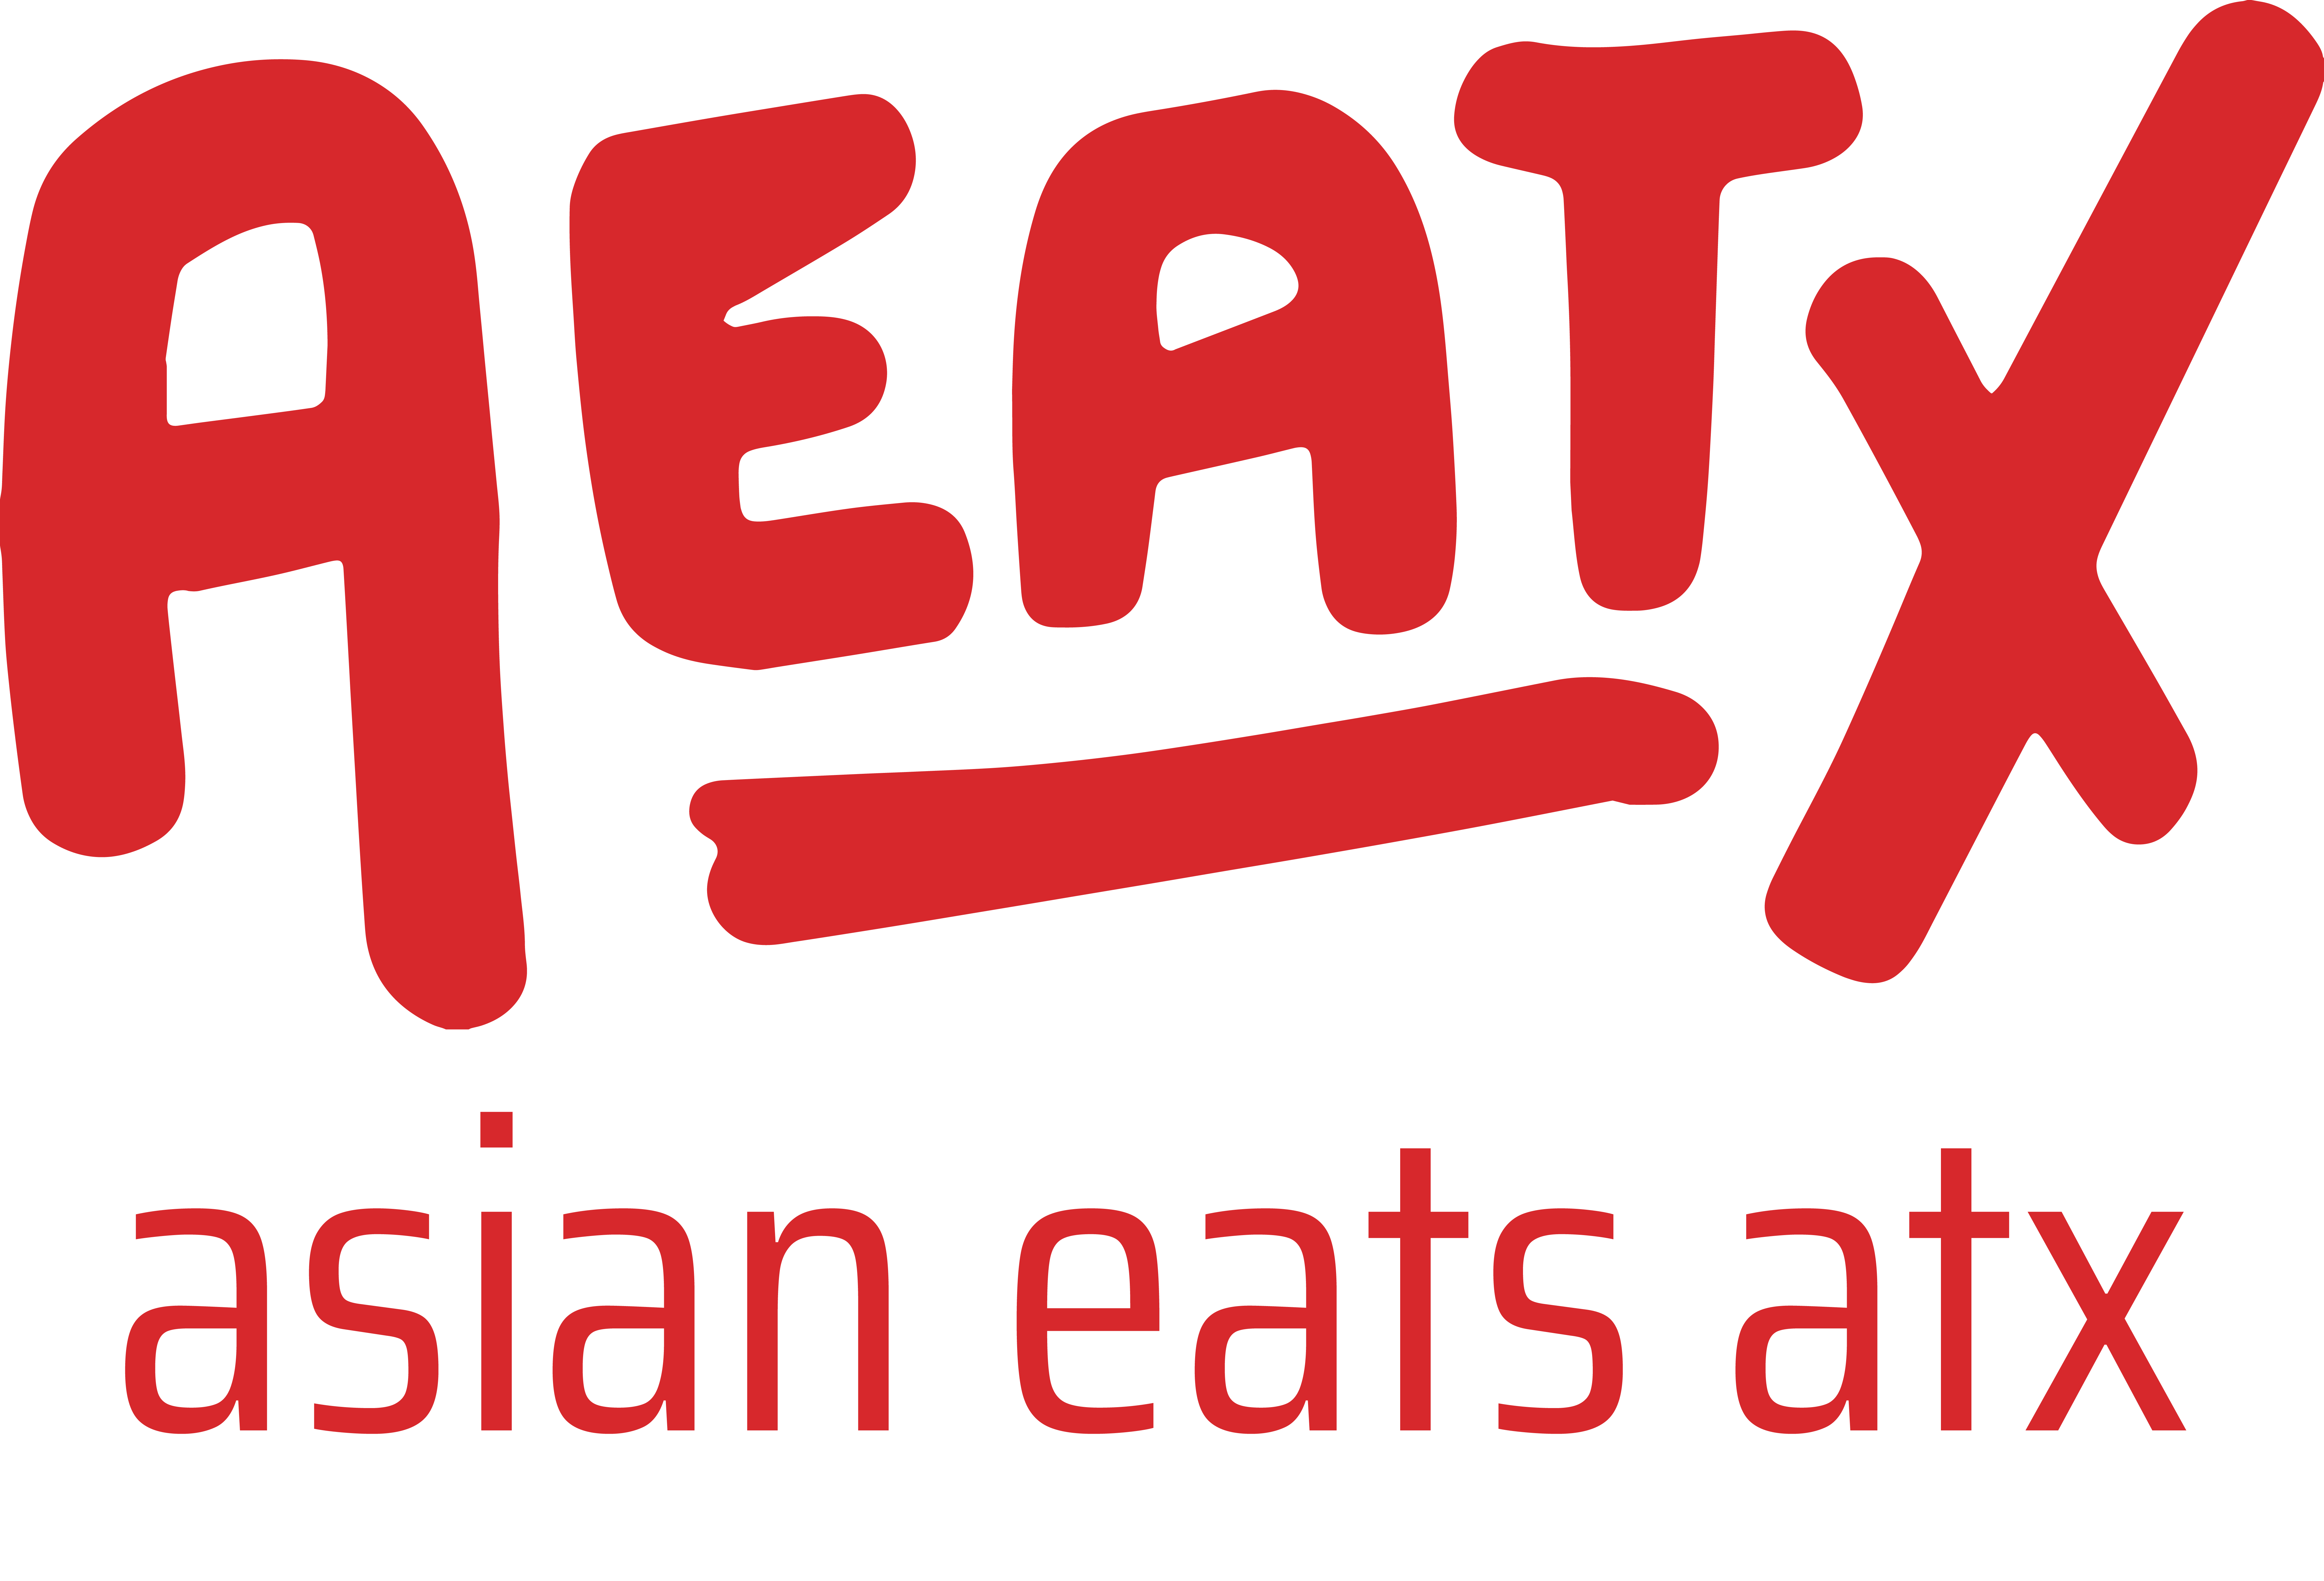 AEATX: Asian Eats ATX